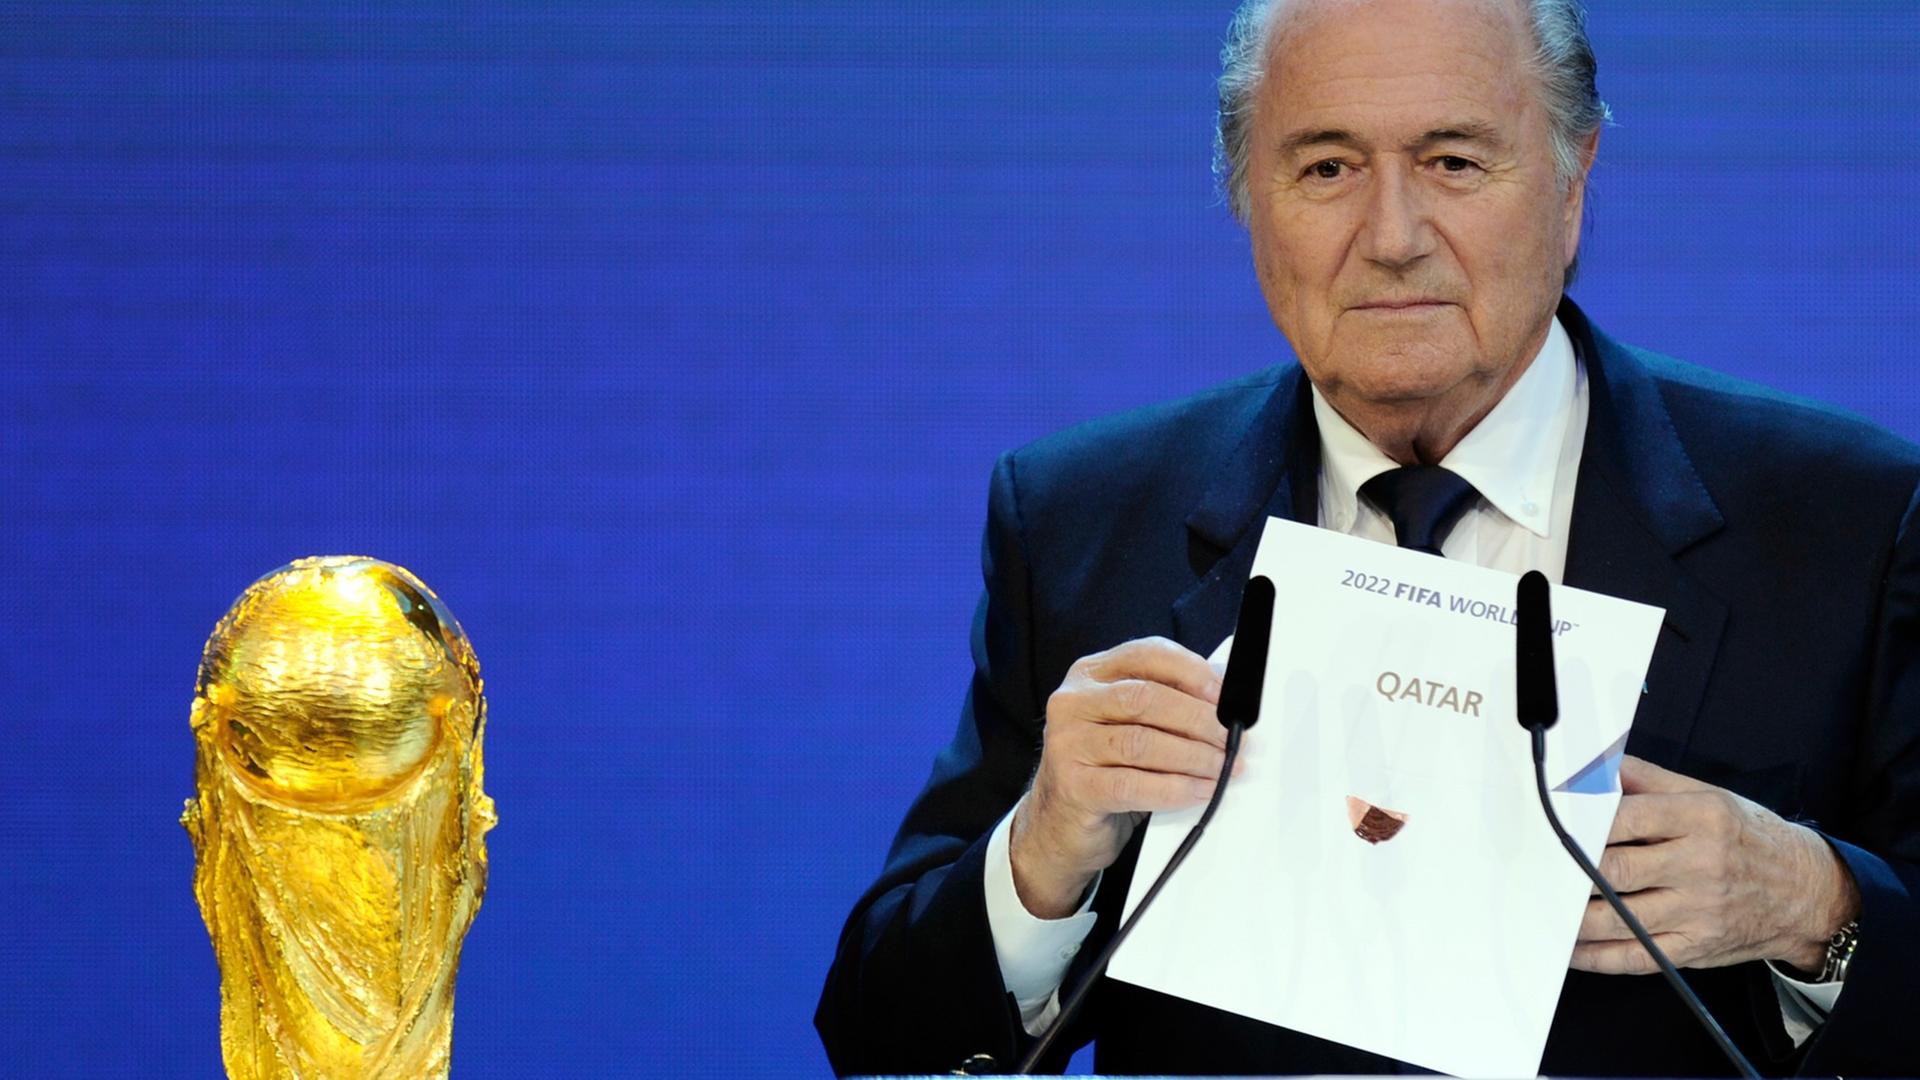 Zukünftige WM-Vergaben - Verhindert Demokratie neue FIFA-Korruptionsskandale?